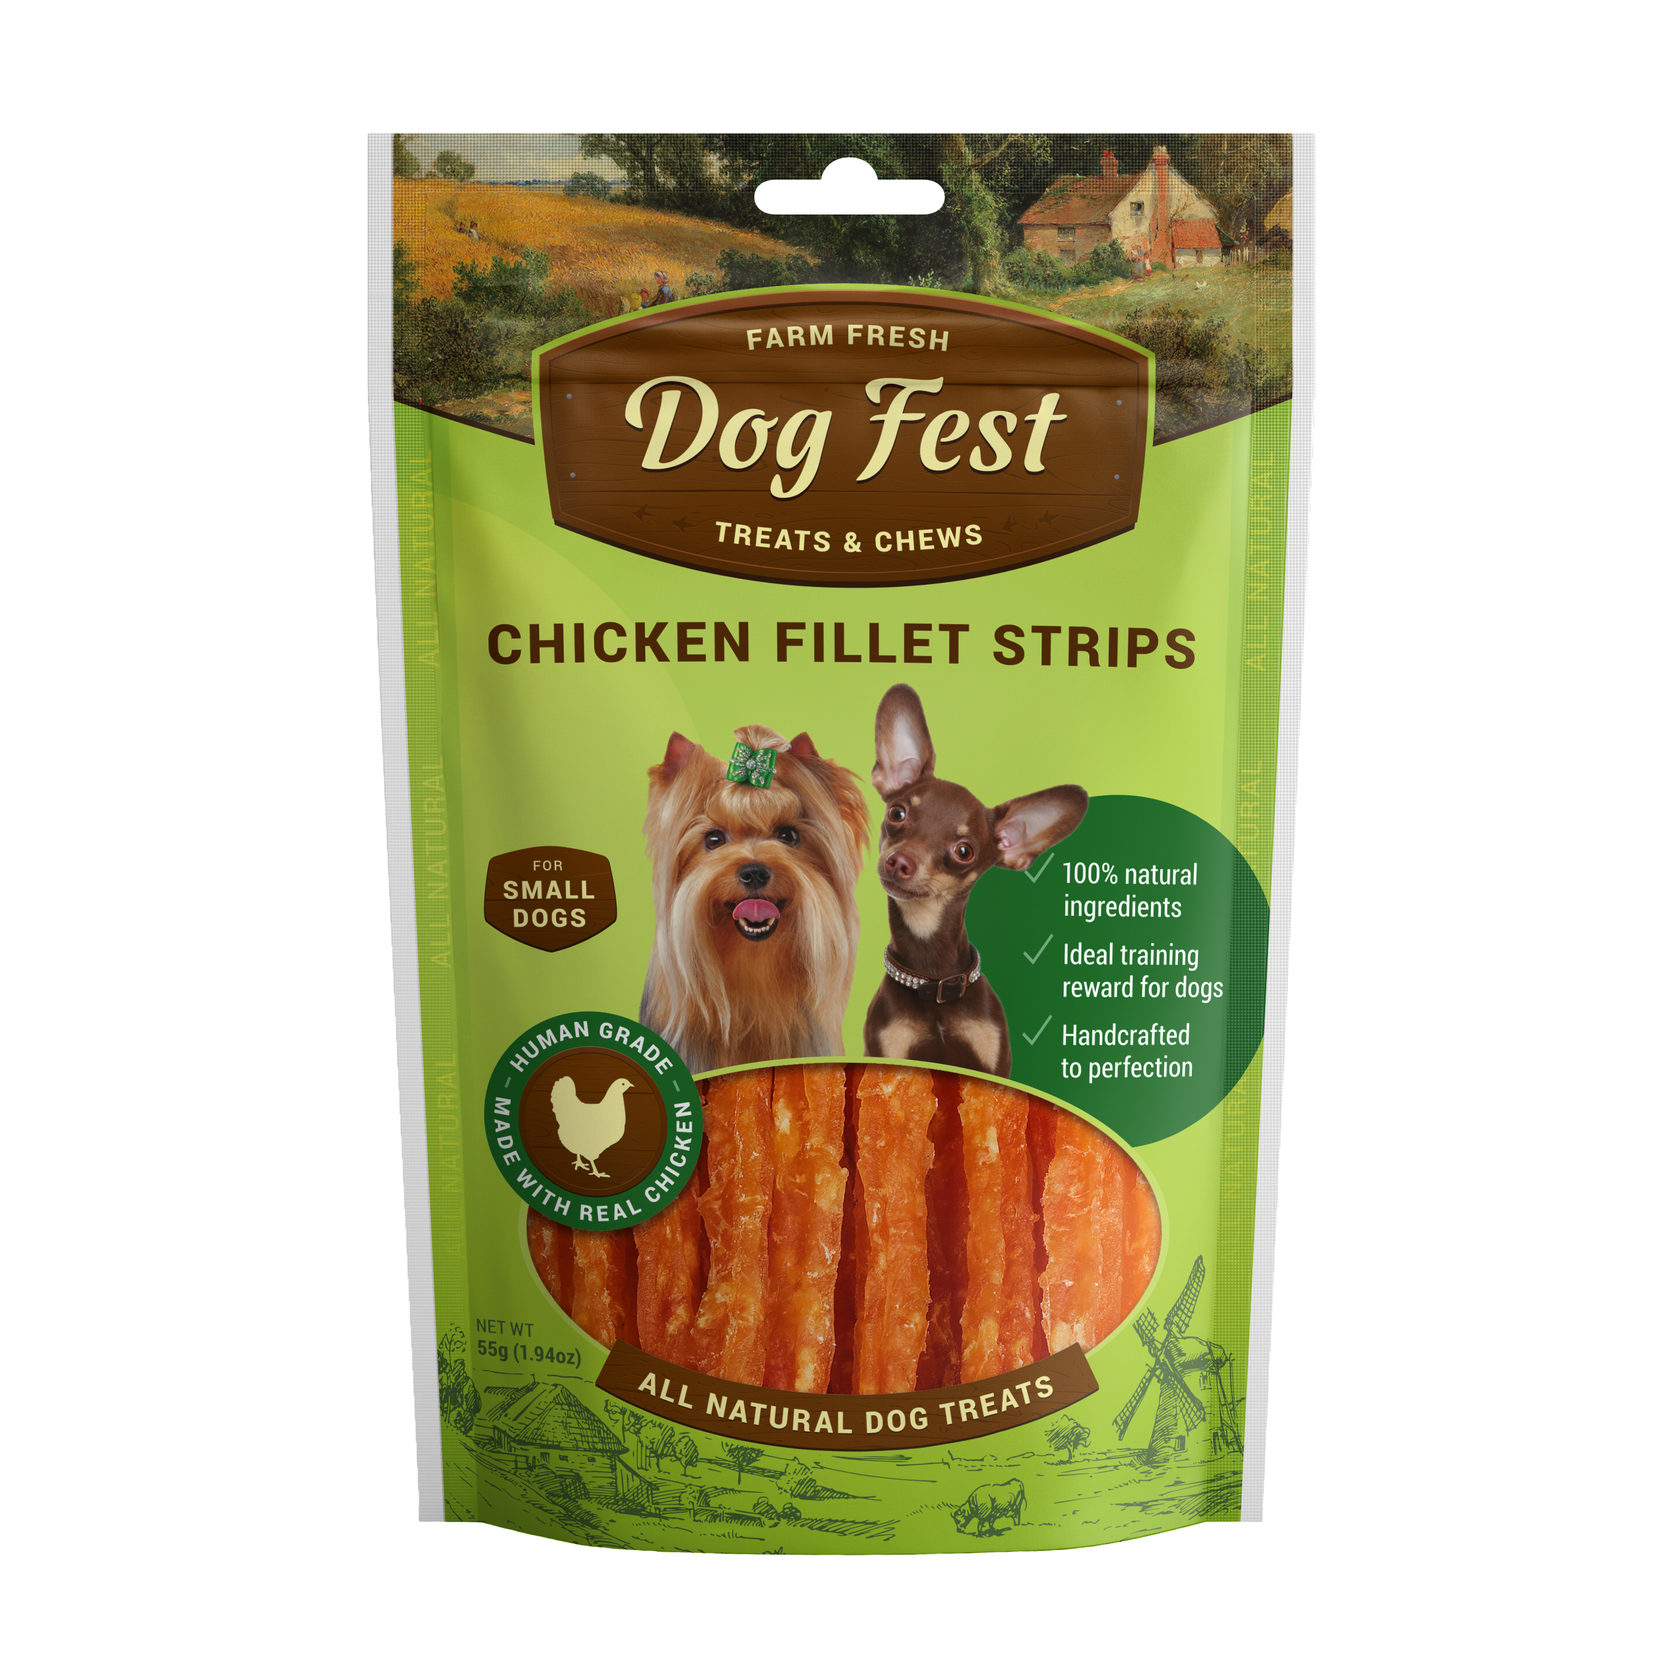 Chicken fillet strips for mini-dogs — "Dog Fest"